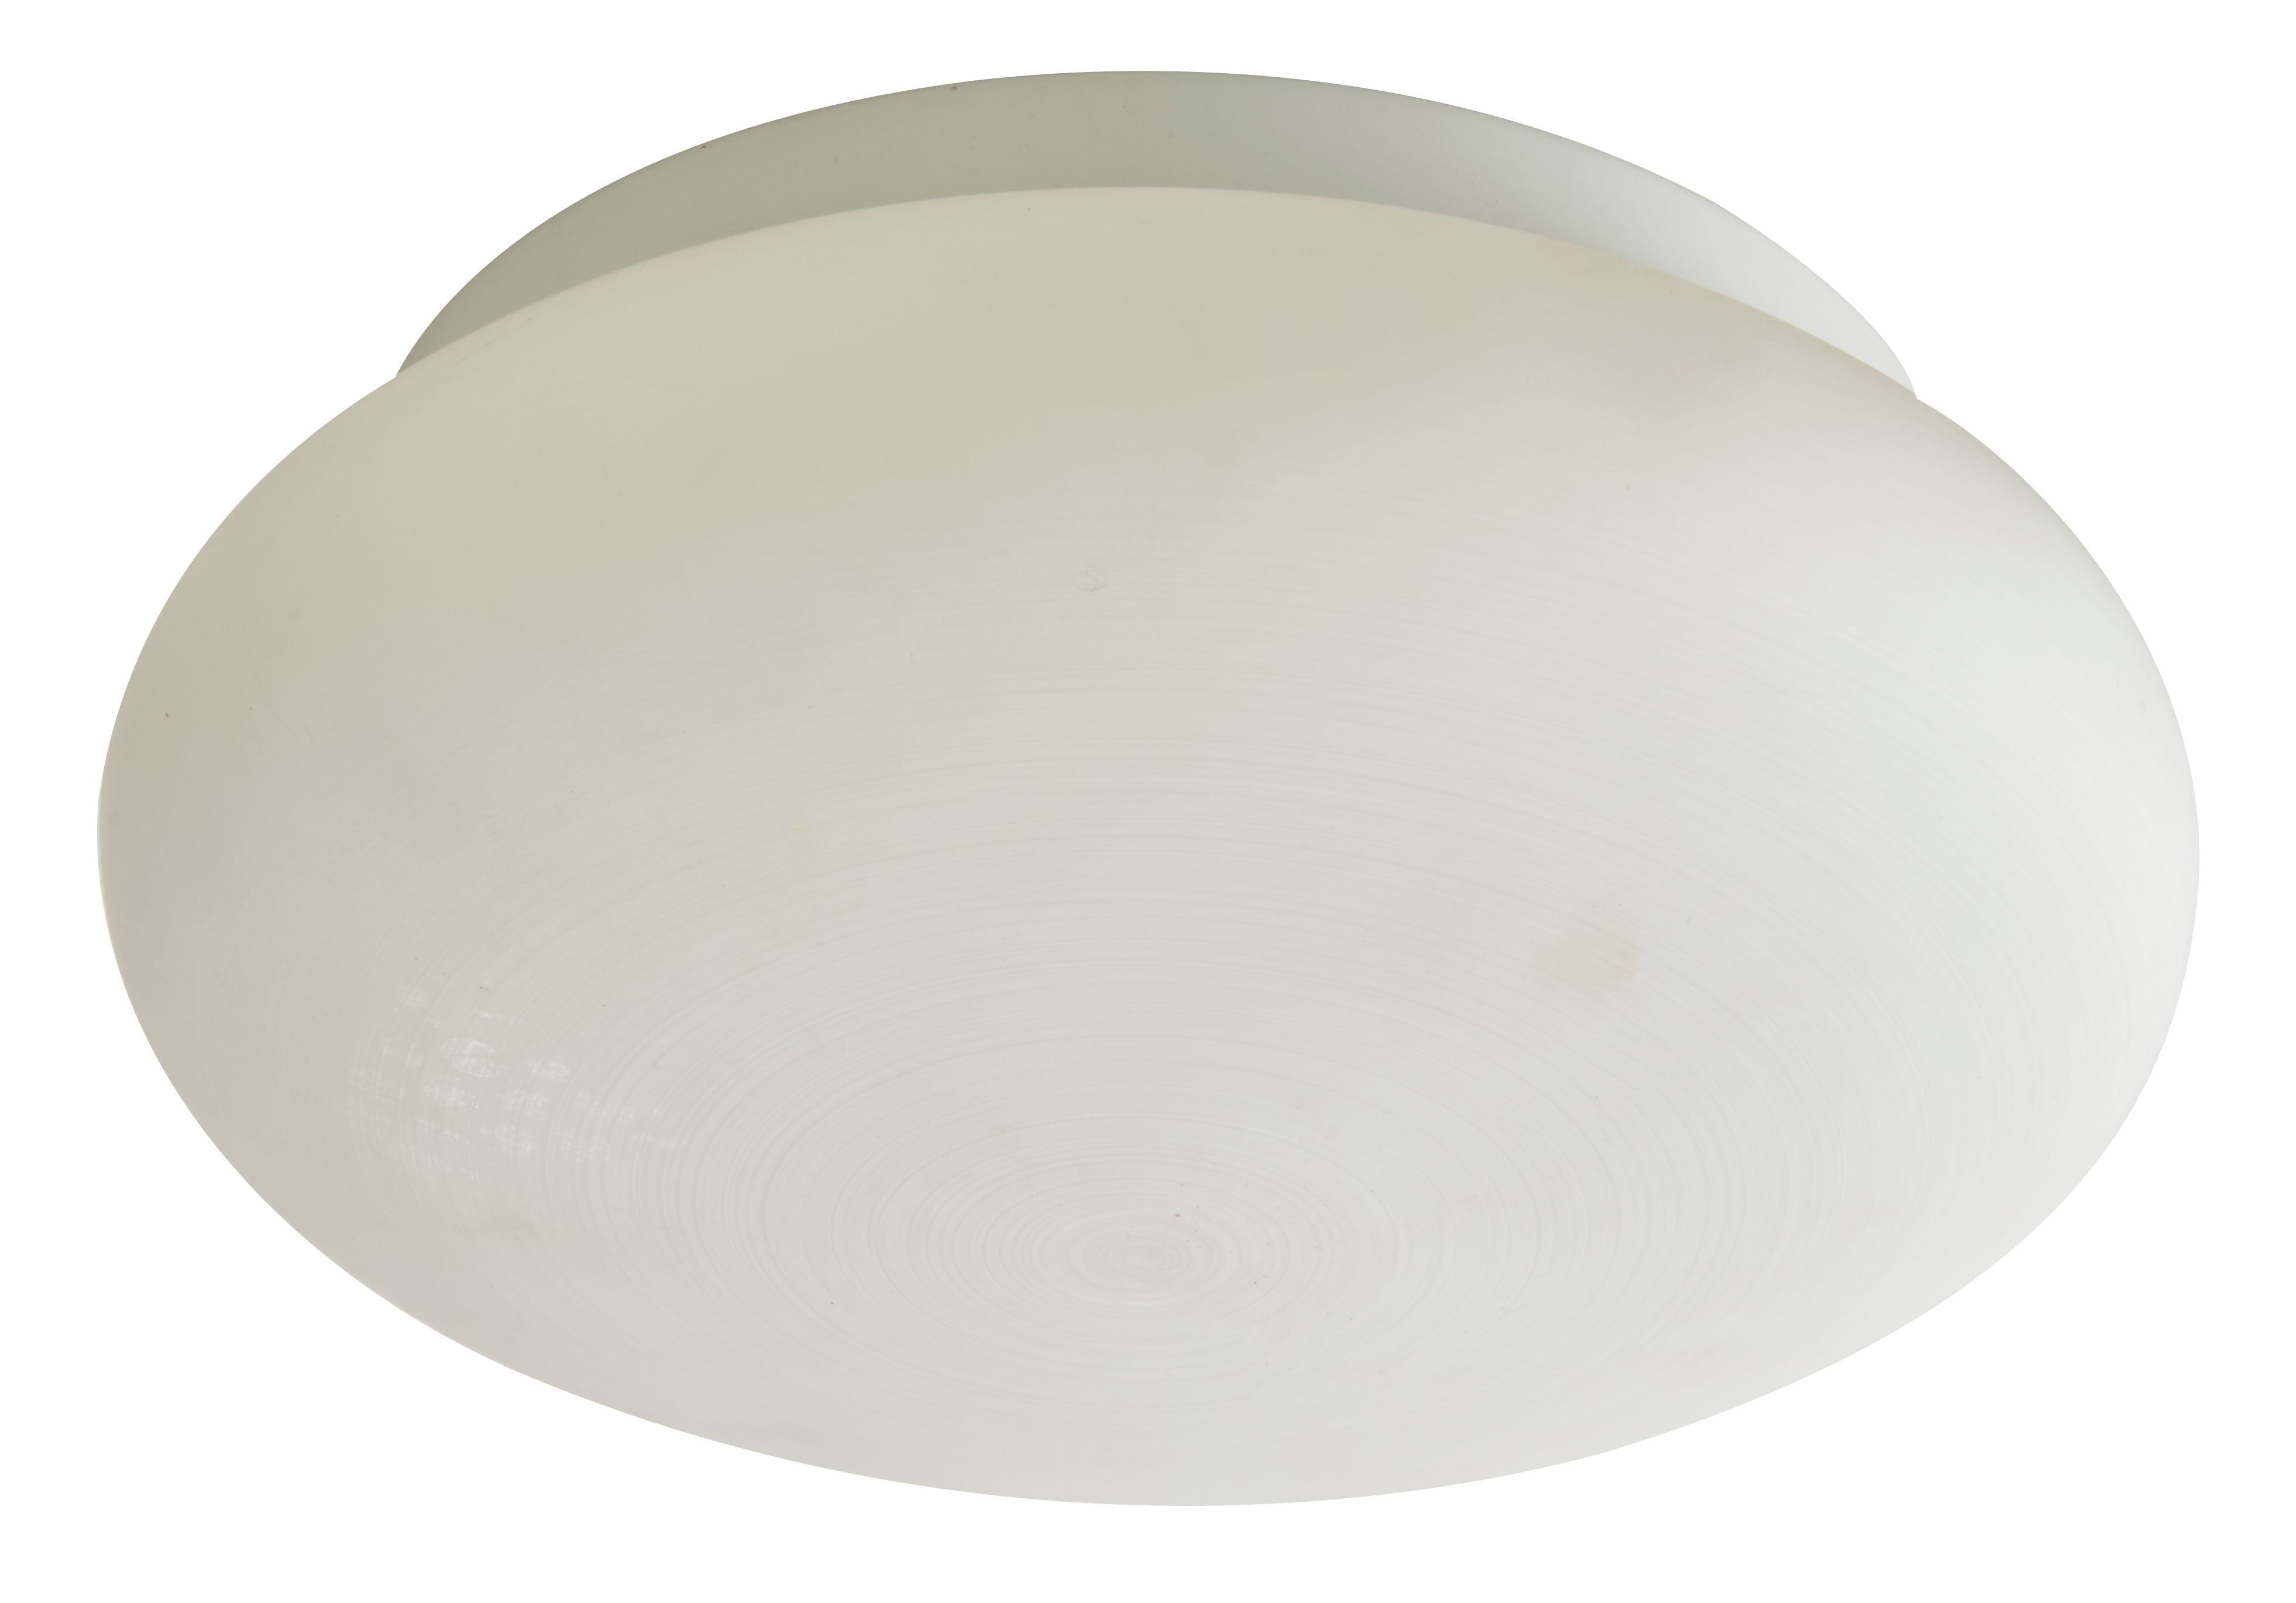 Ovalis White Ceiling light